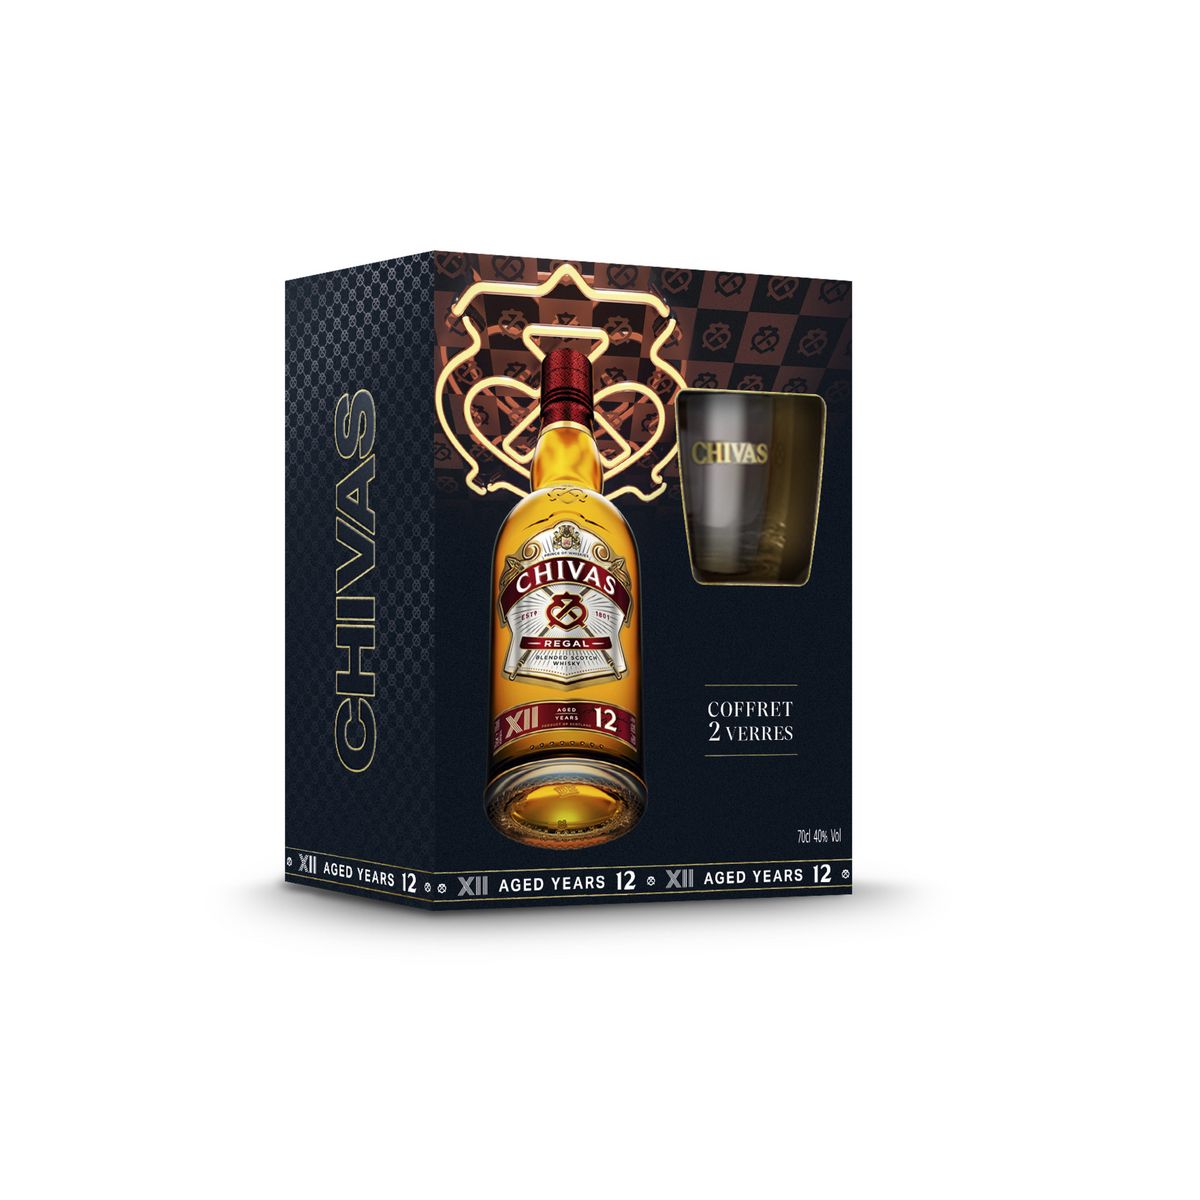 CHIVAS REGAL Scotch Whisky écossais 12 ans 40% 2 verres offerts 70cl pas  cher 